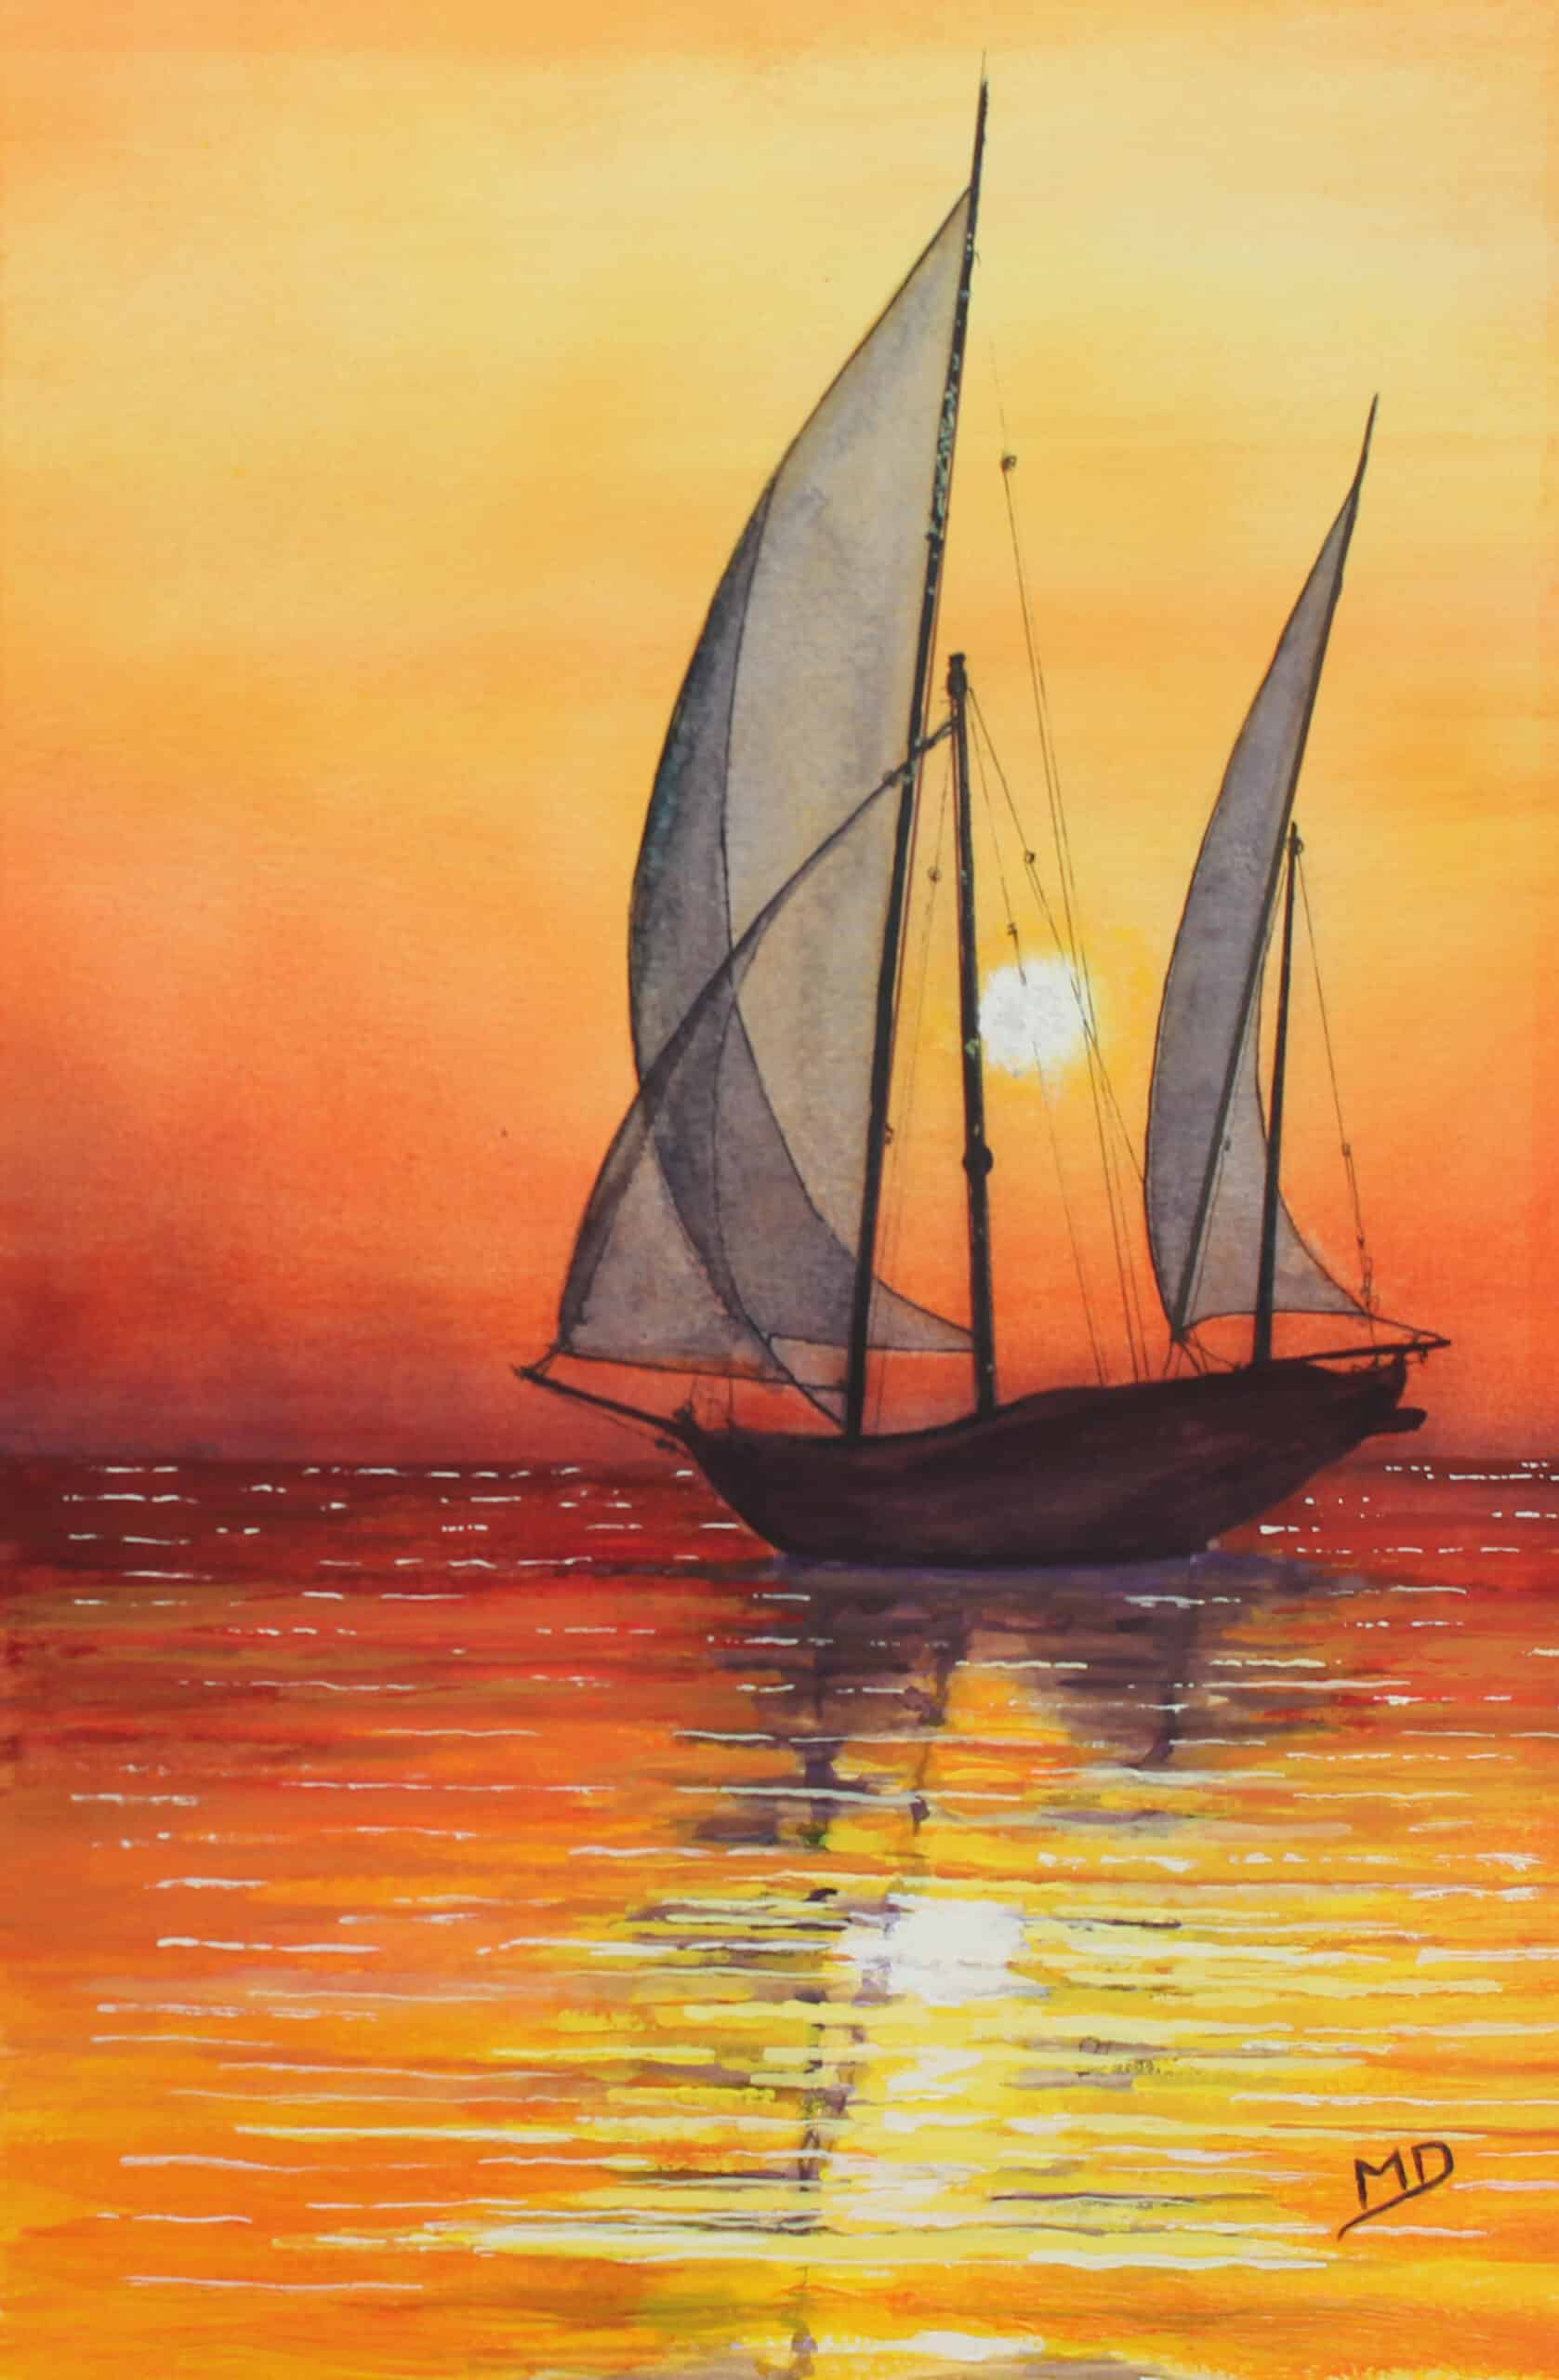 œuvre d'art, marine, acrylique sur papier A4, david morel artiste, voilier sur un fond de coucher de soleil